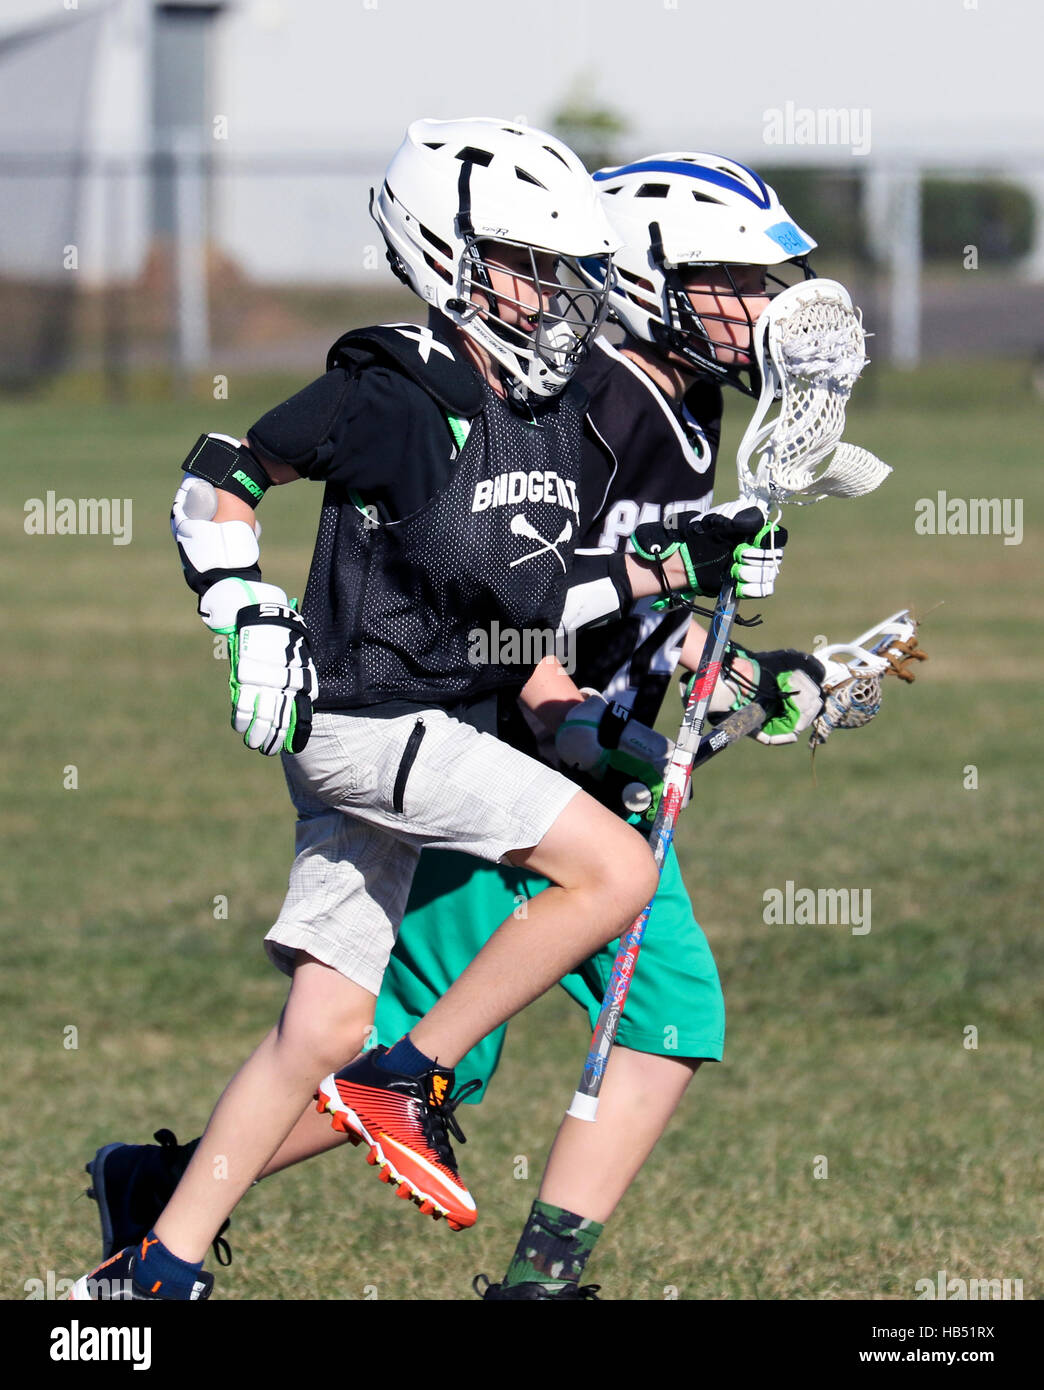 Dos muchachos de 10 años jugando Lacrosse. Foto de stock